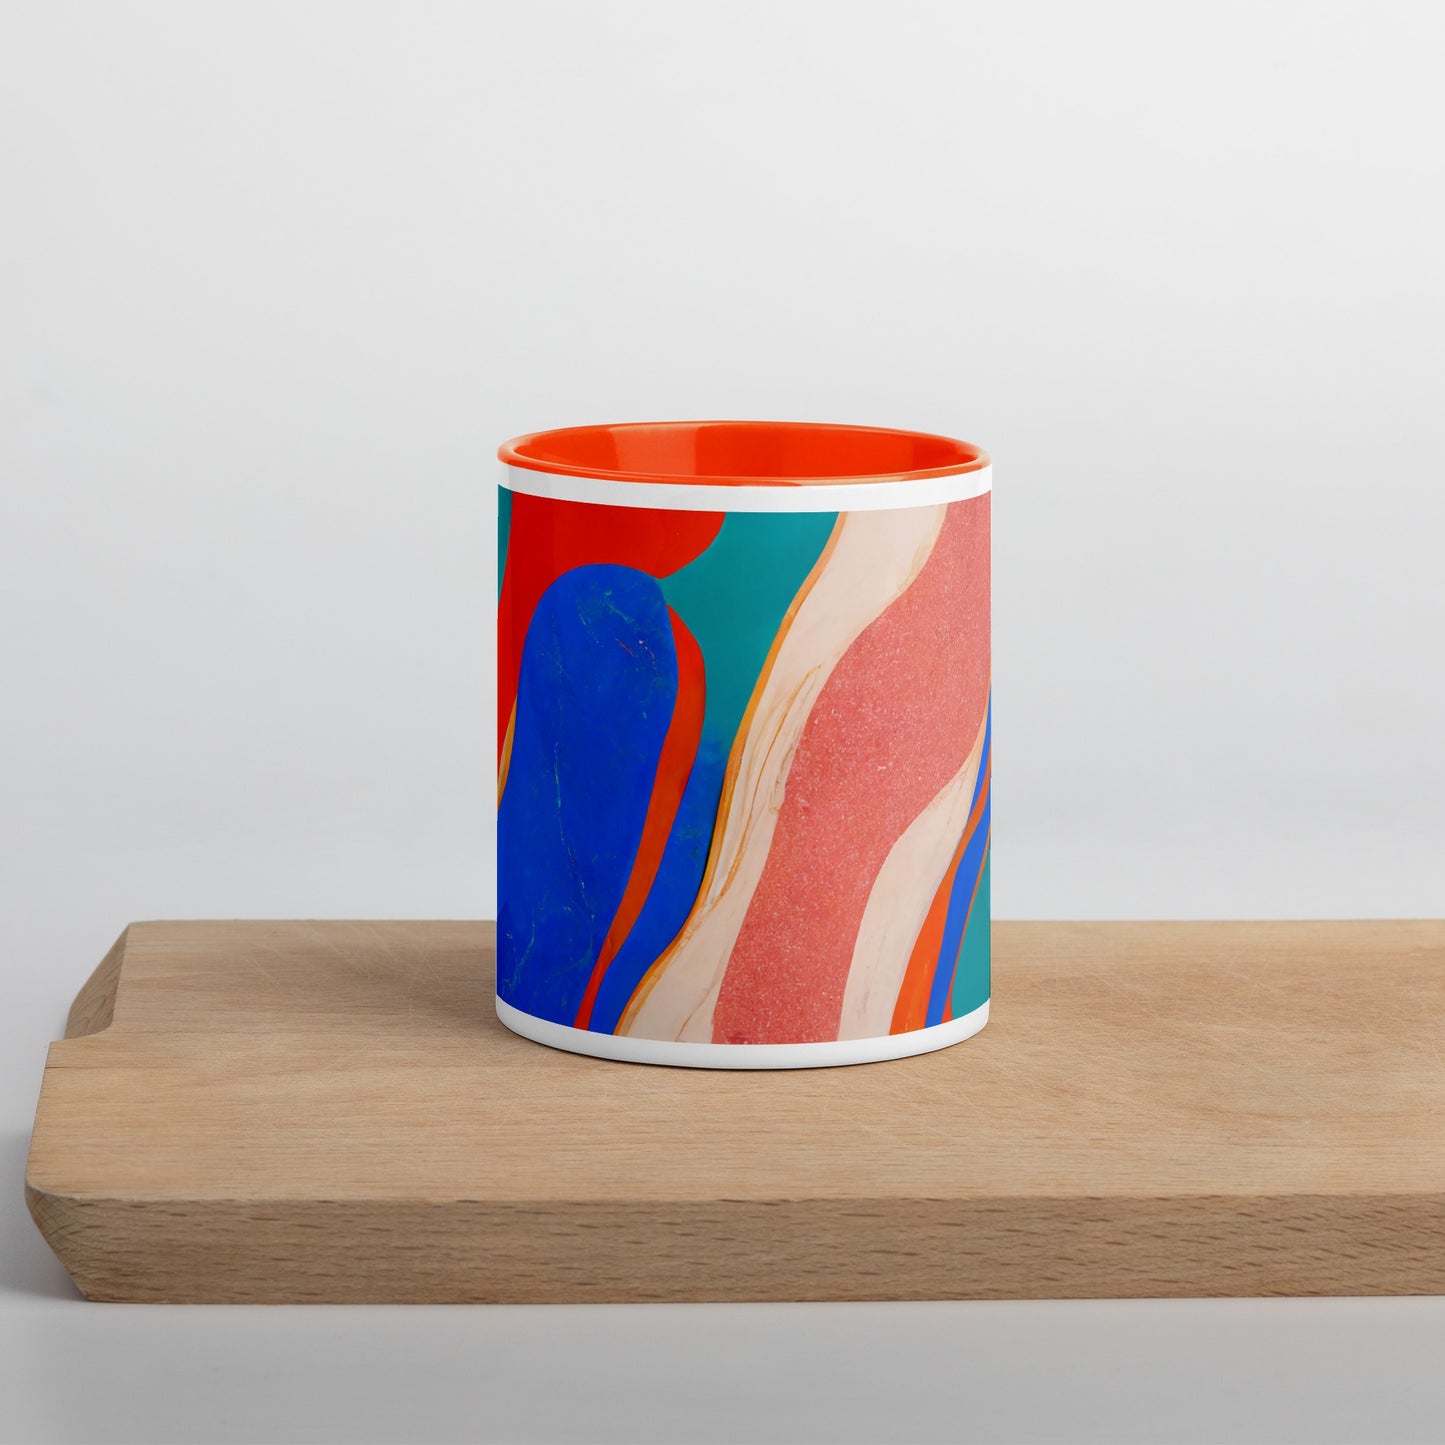 Marble Wonder Ceramic Mug with Color Inside